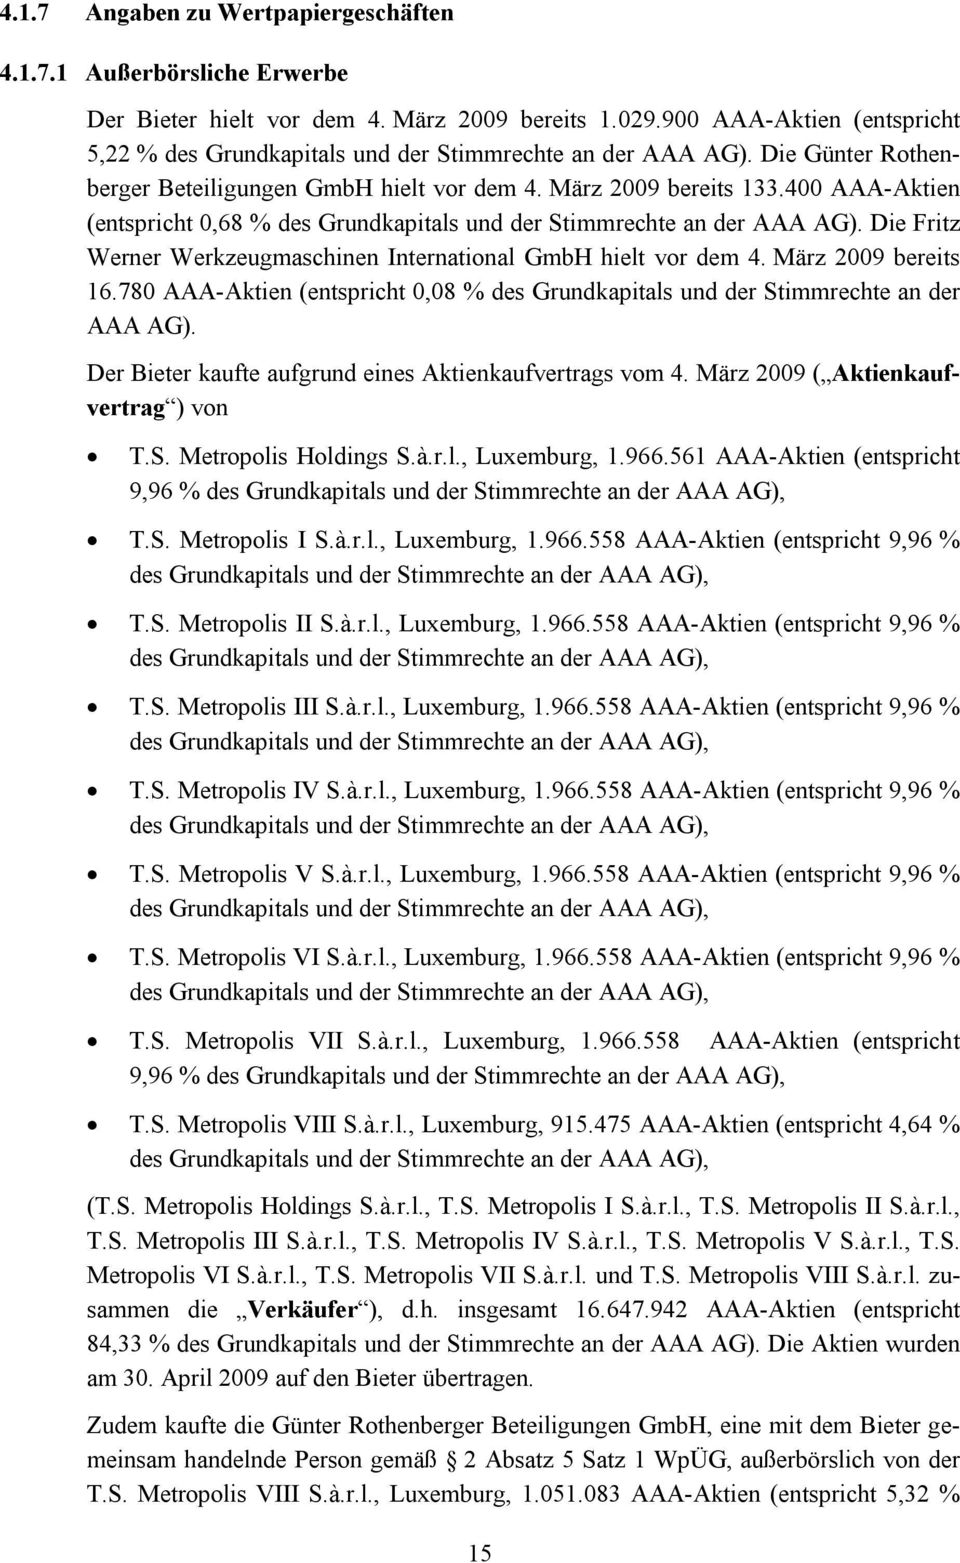 400 AAA-Aktien (entspricht 0,68 % des Grundkapitals und der Stimmrechte an der AAA AG). Die Fritz Werner Werkzeugmaschinen International GmbH hielt vor dem 4. März 2009 bereits 16.